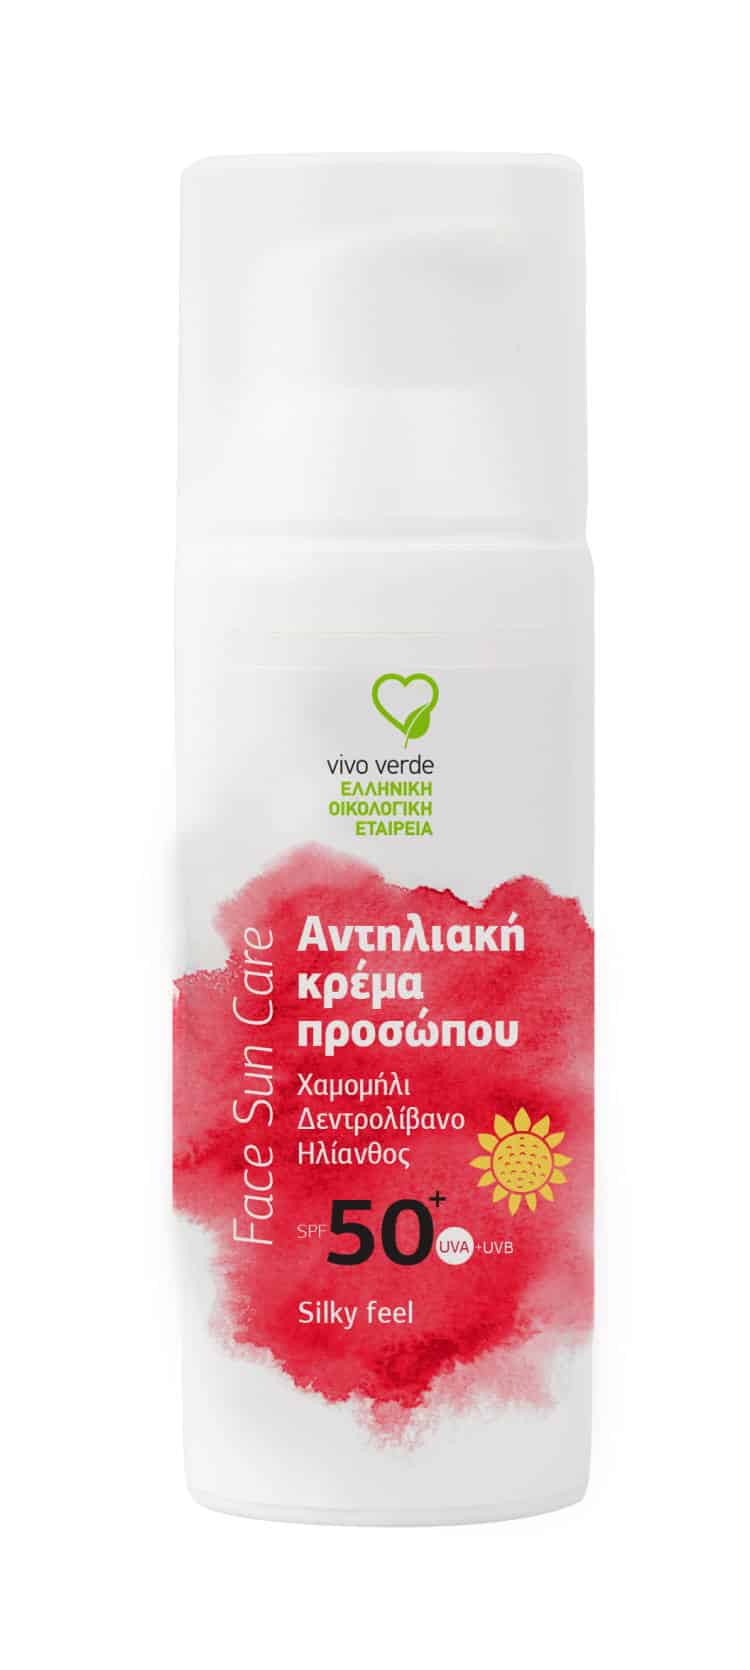 Η Ελληνική Οικολογική Vivo Verde παρουσιάζει την νέα αντηλιακή κρέμα προσώπου SILKY FEEL 50+SPF 